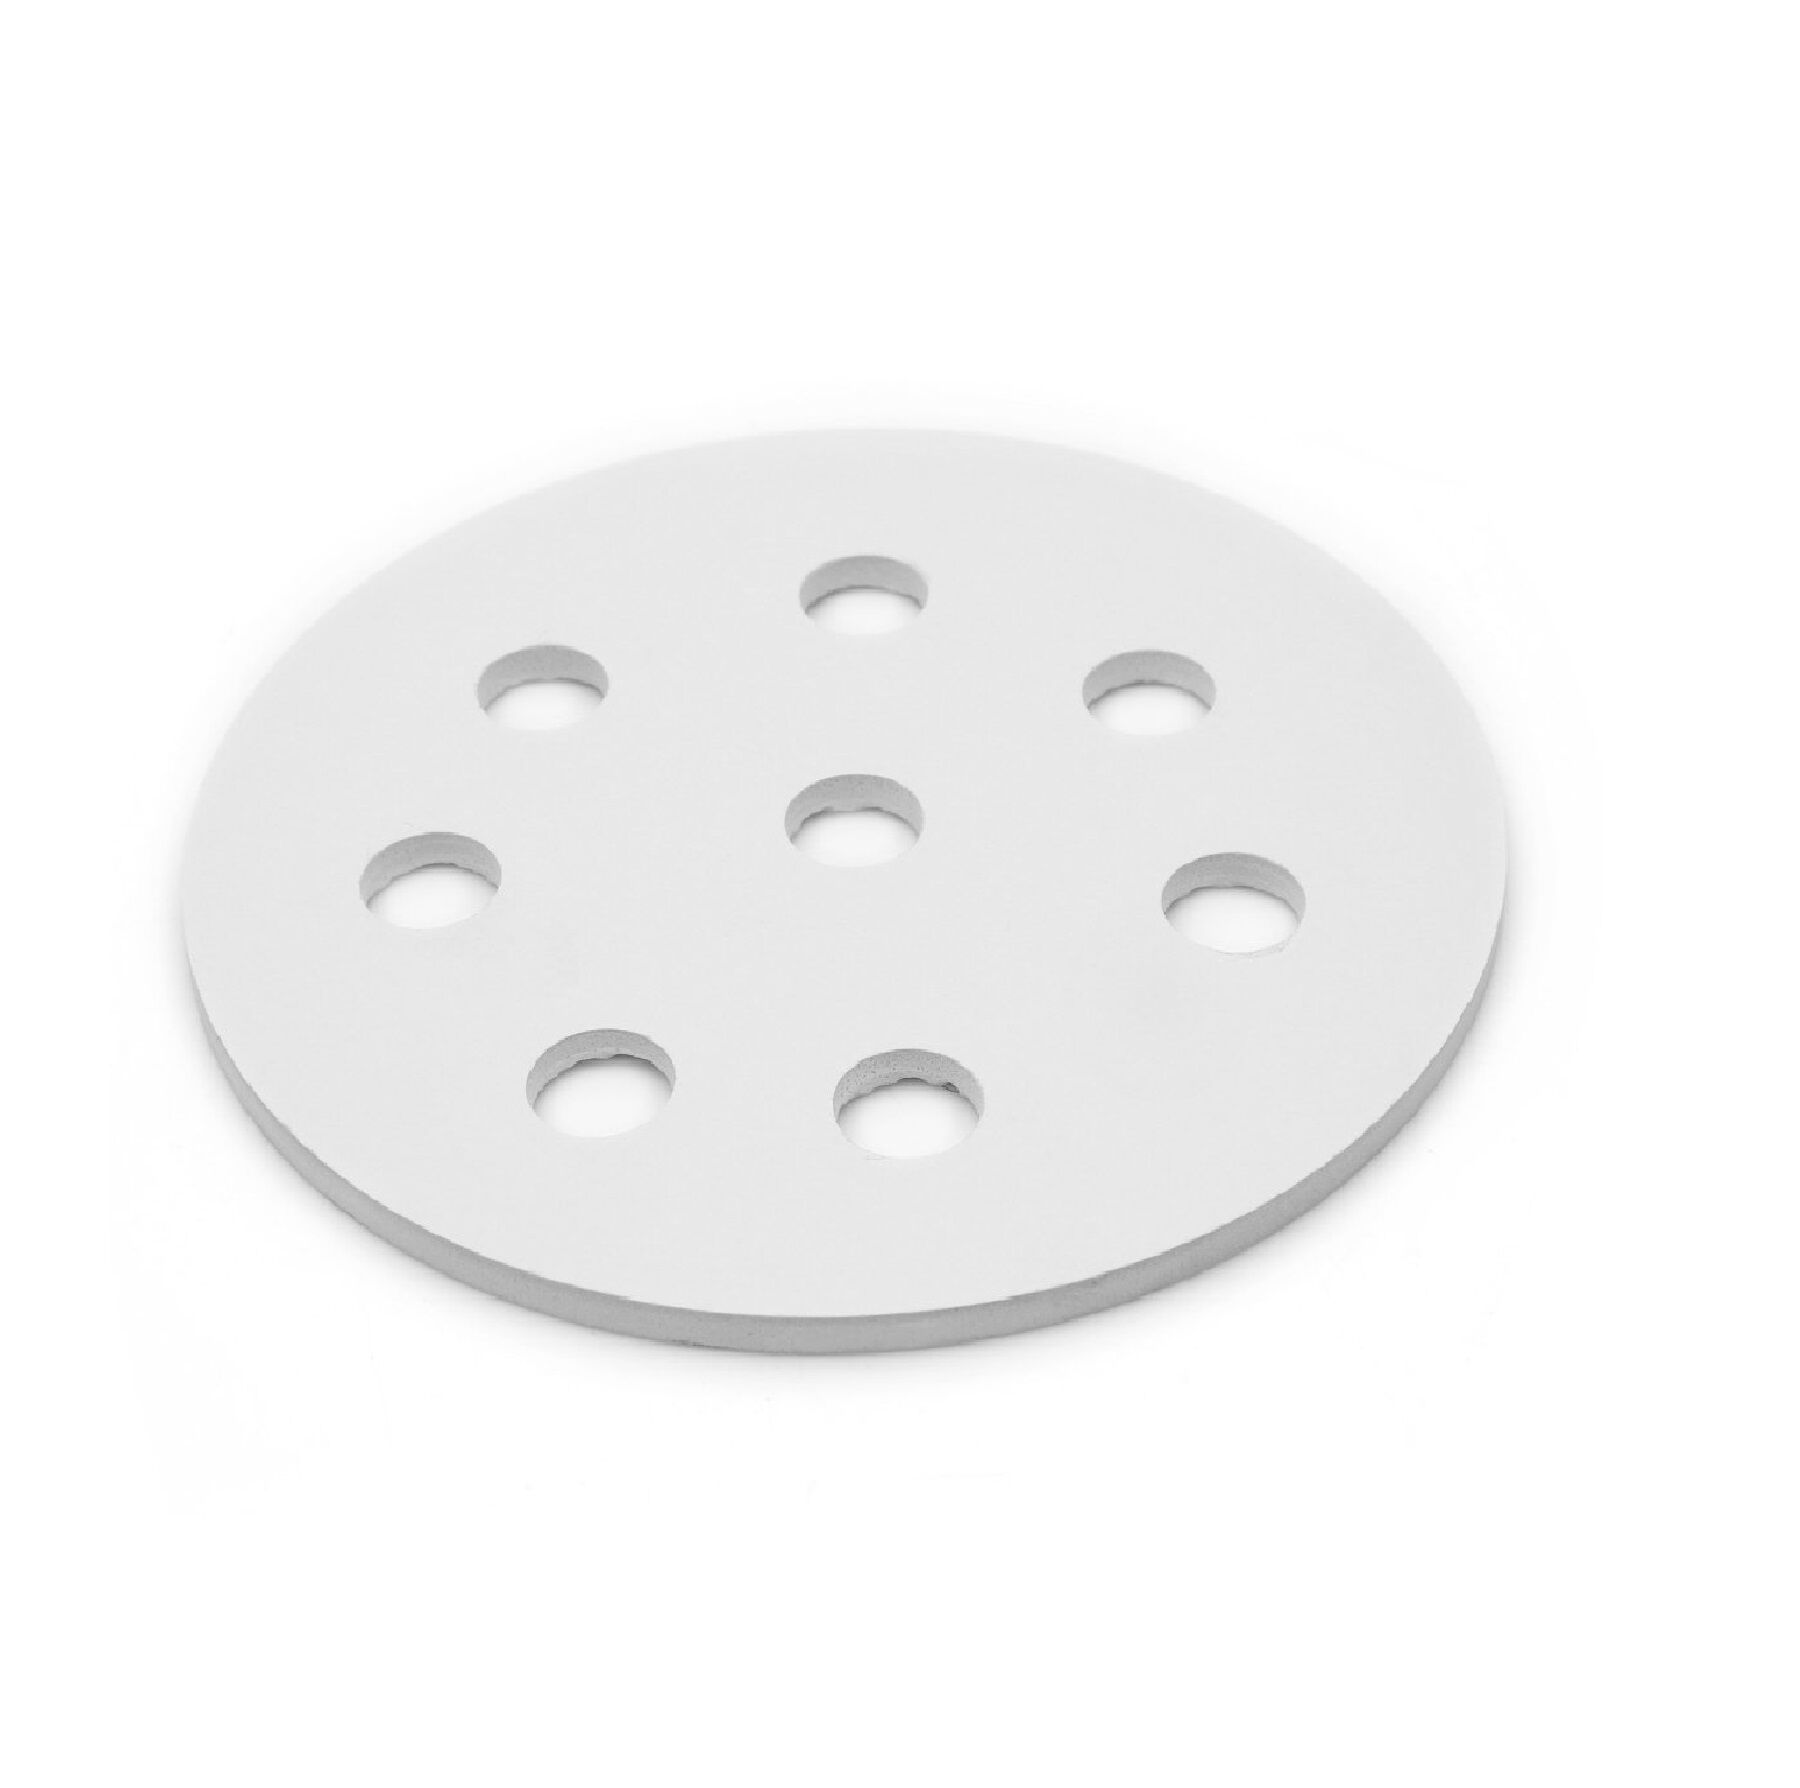 Porselen Disk-Desikatör Plakası- 210 mm- Porselain Plate For Dessicator